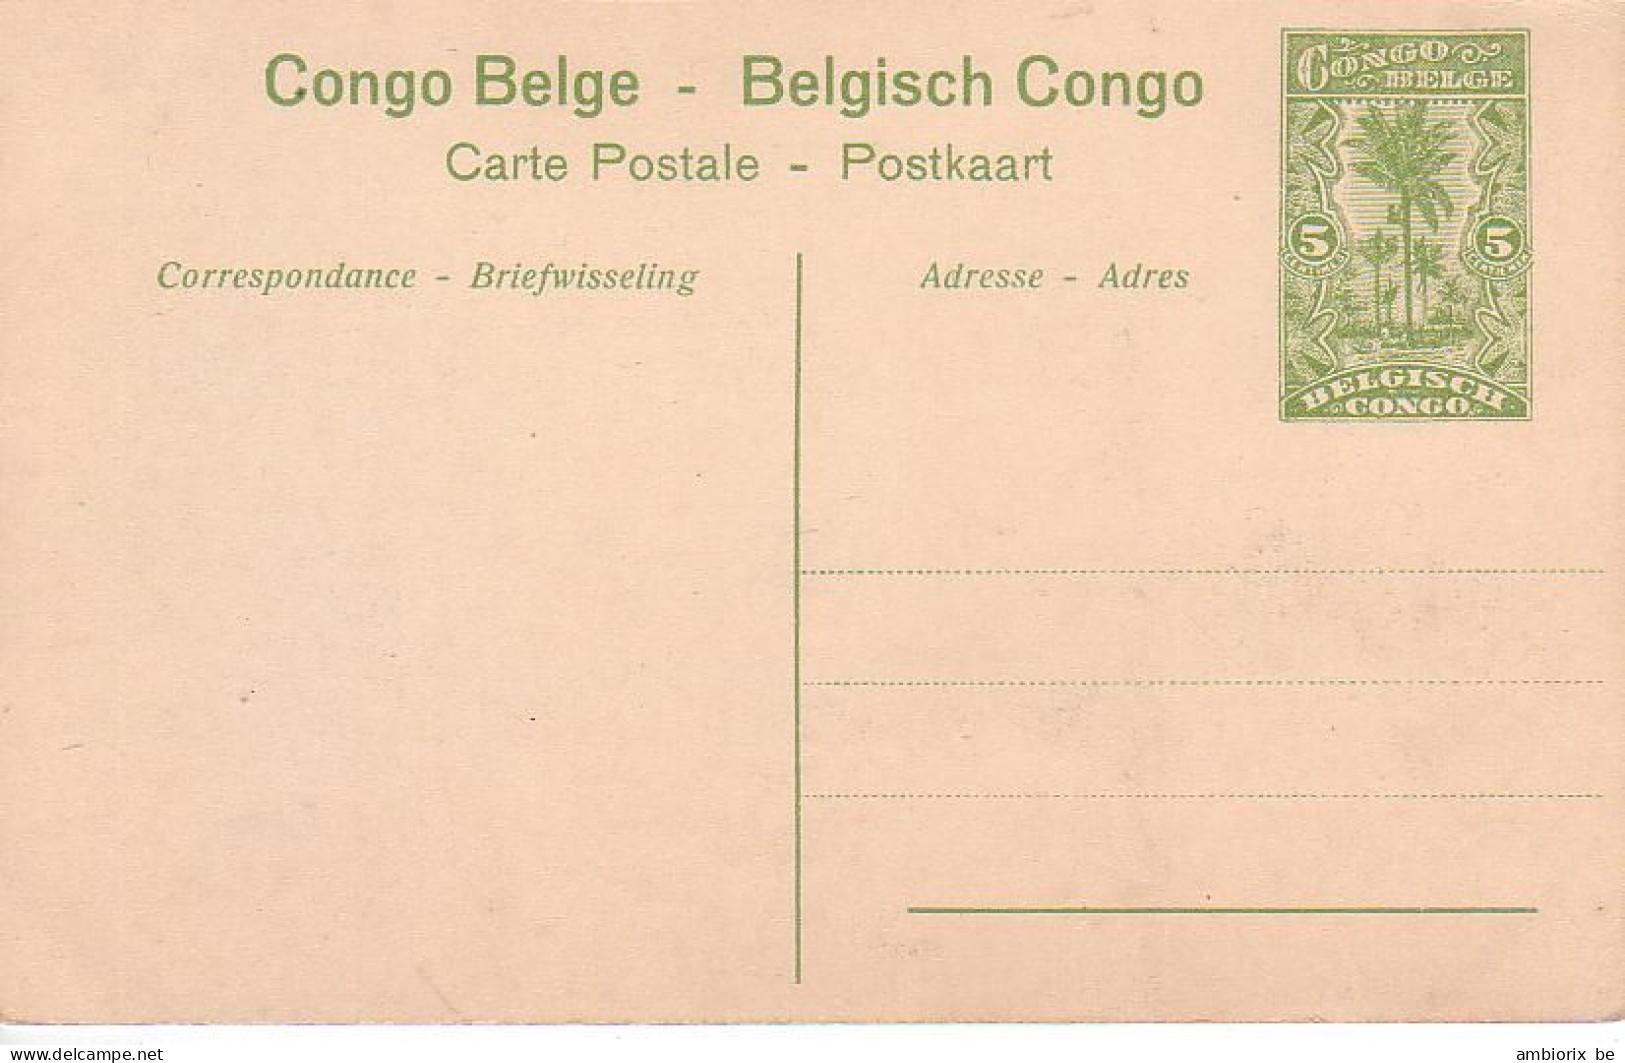 Etier Postal Congo Neuf N° 42 - 64 - Chute De La Pozo Près Stanleyville - Ganzsachen